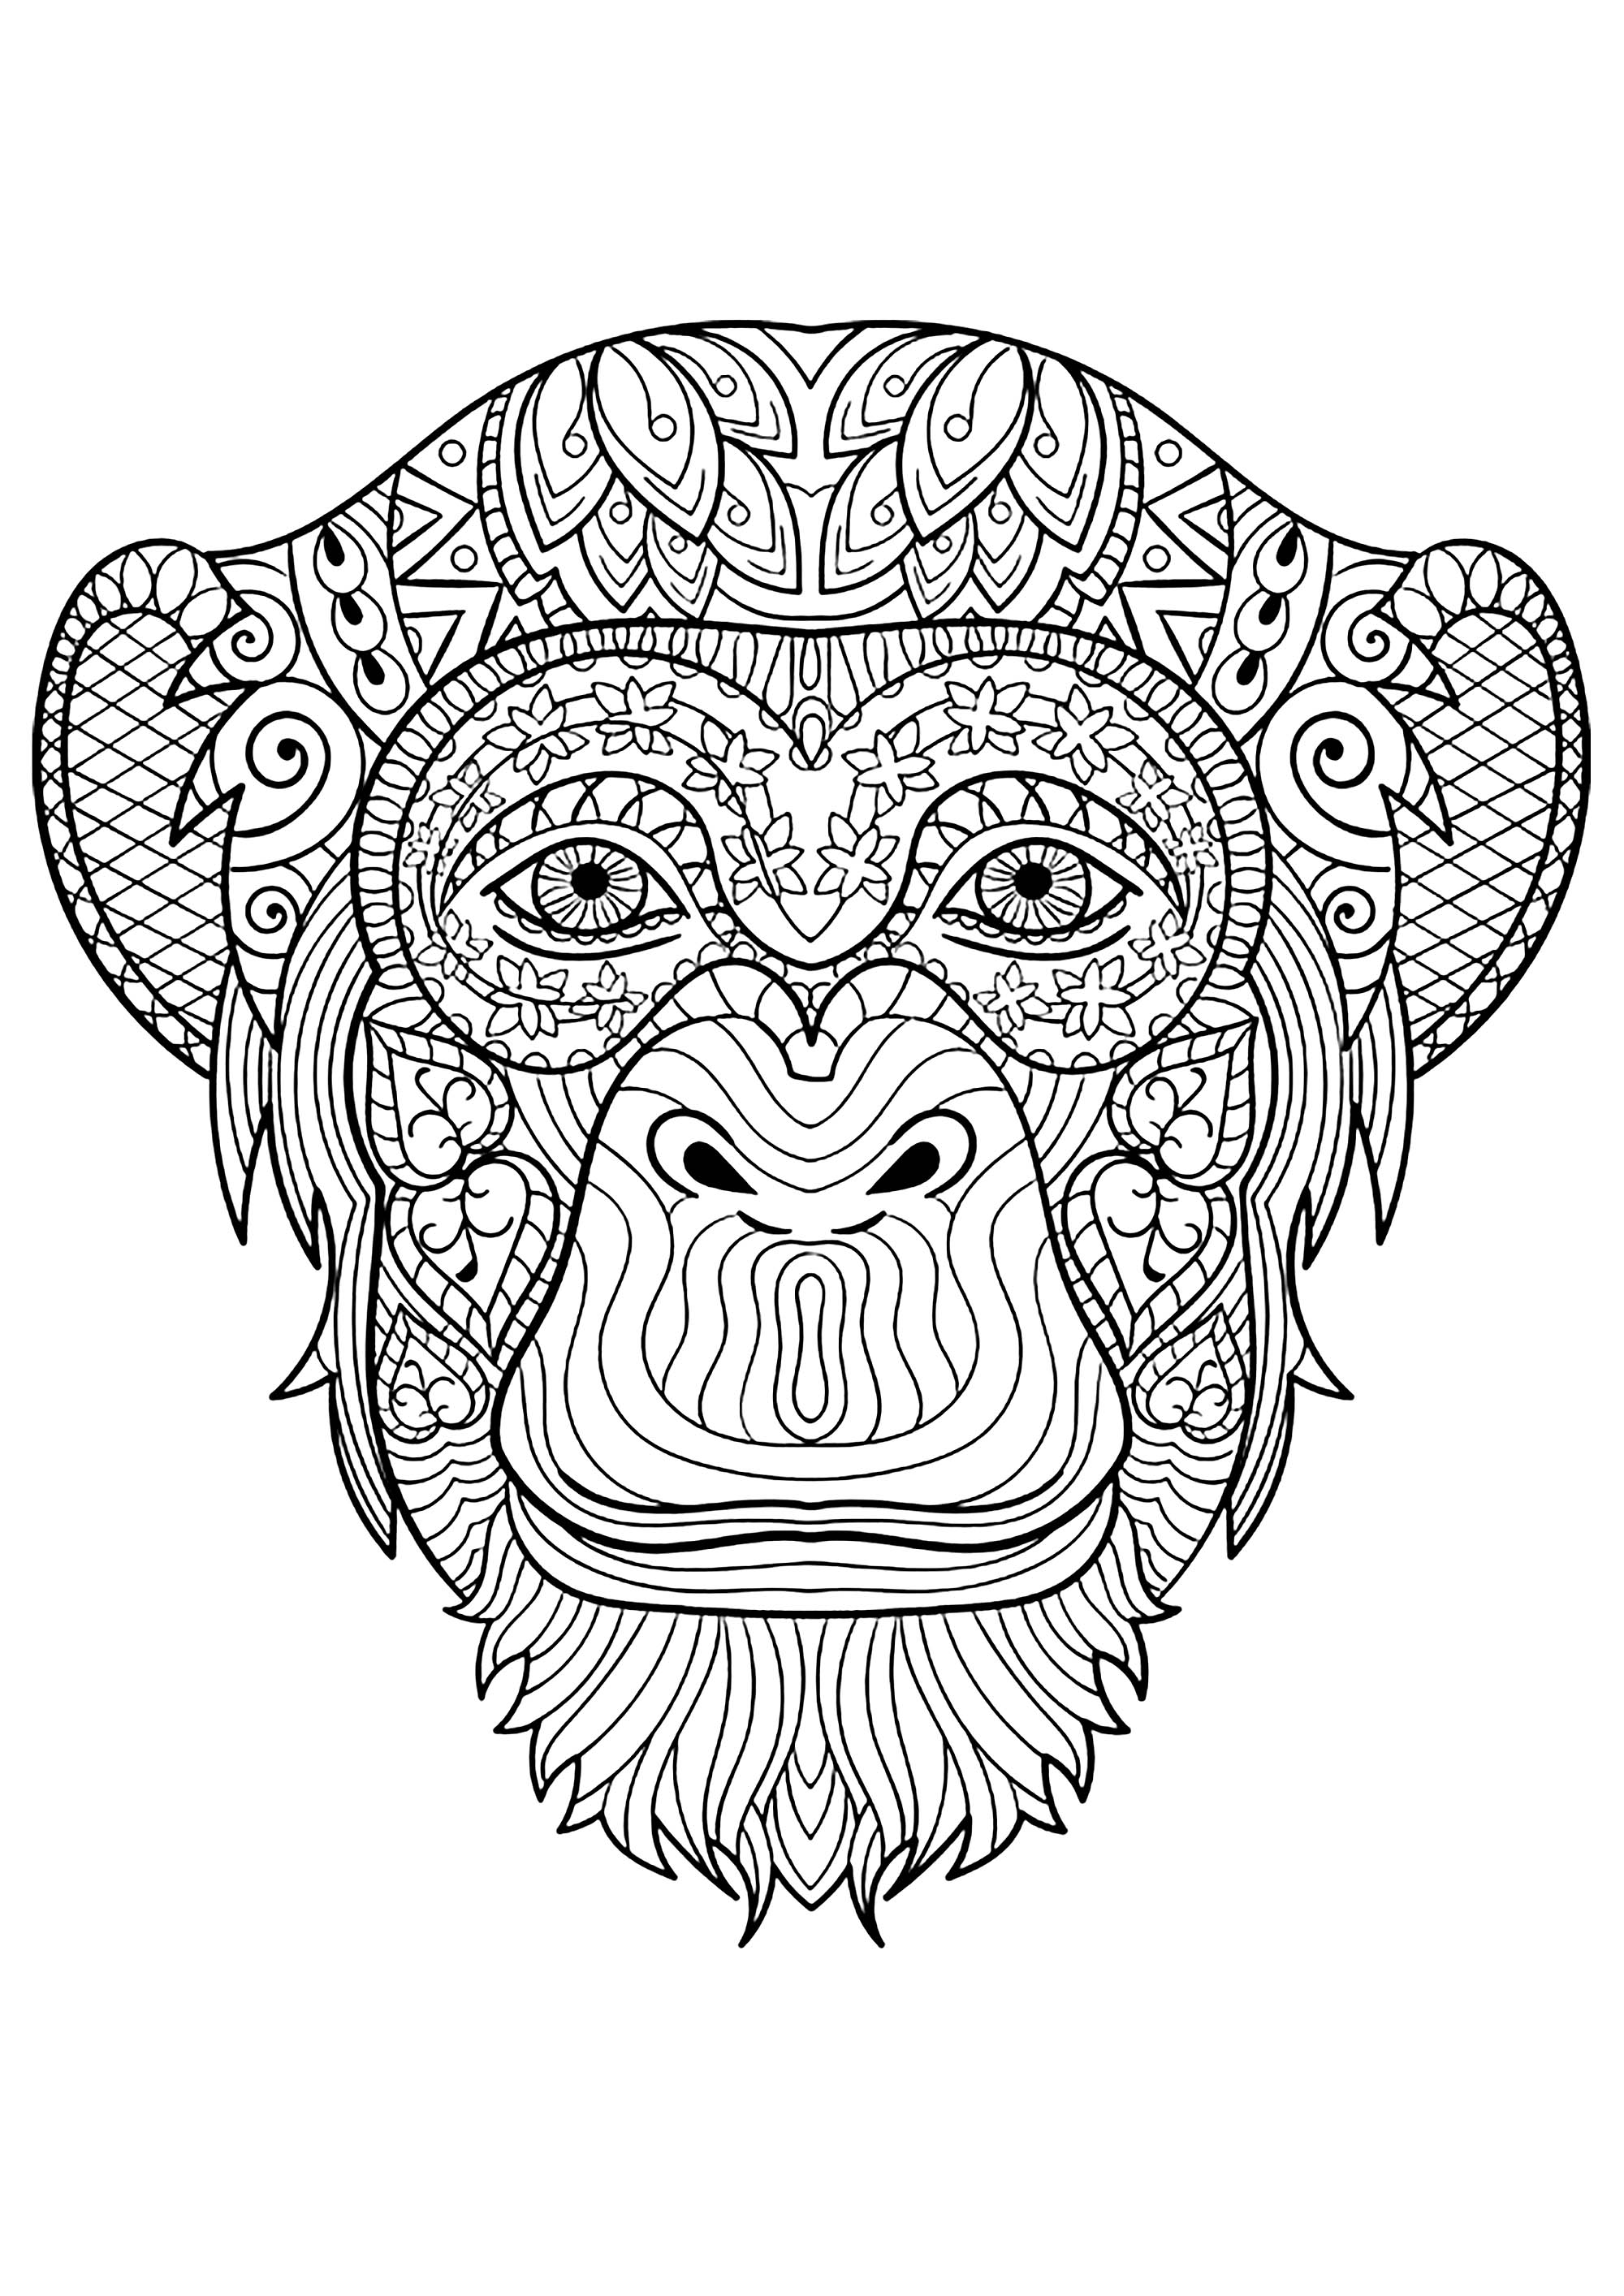 Coloração simples de macacos para crianças